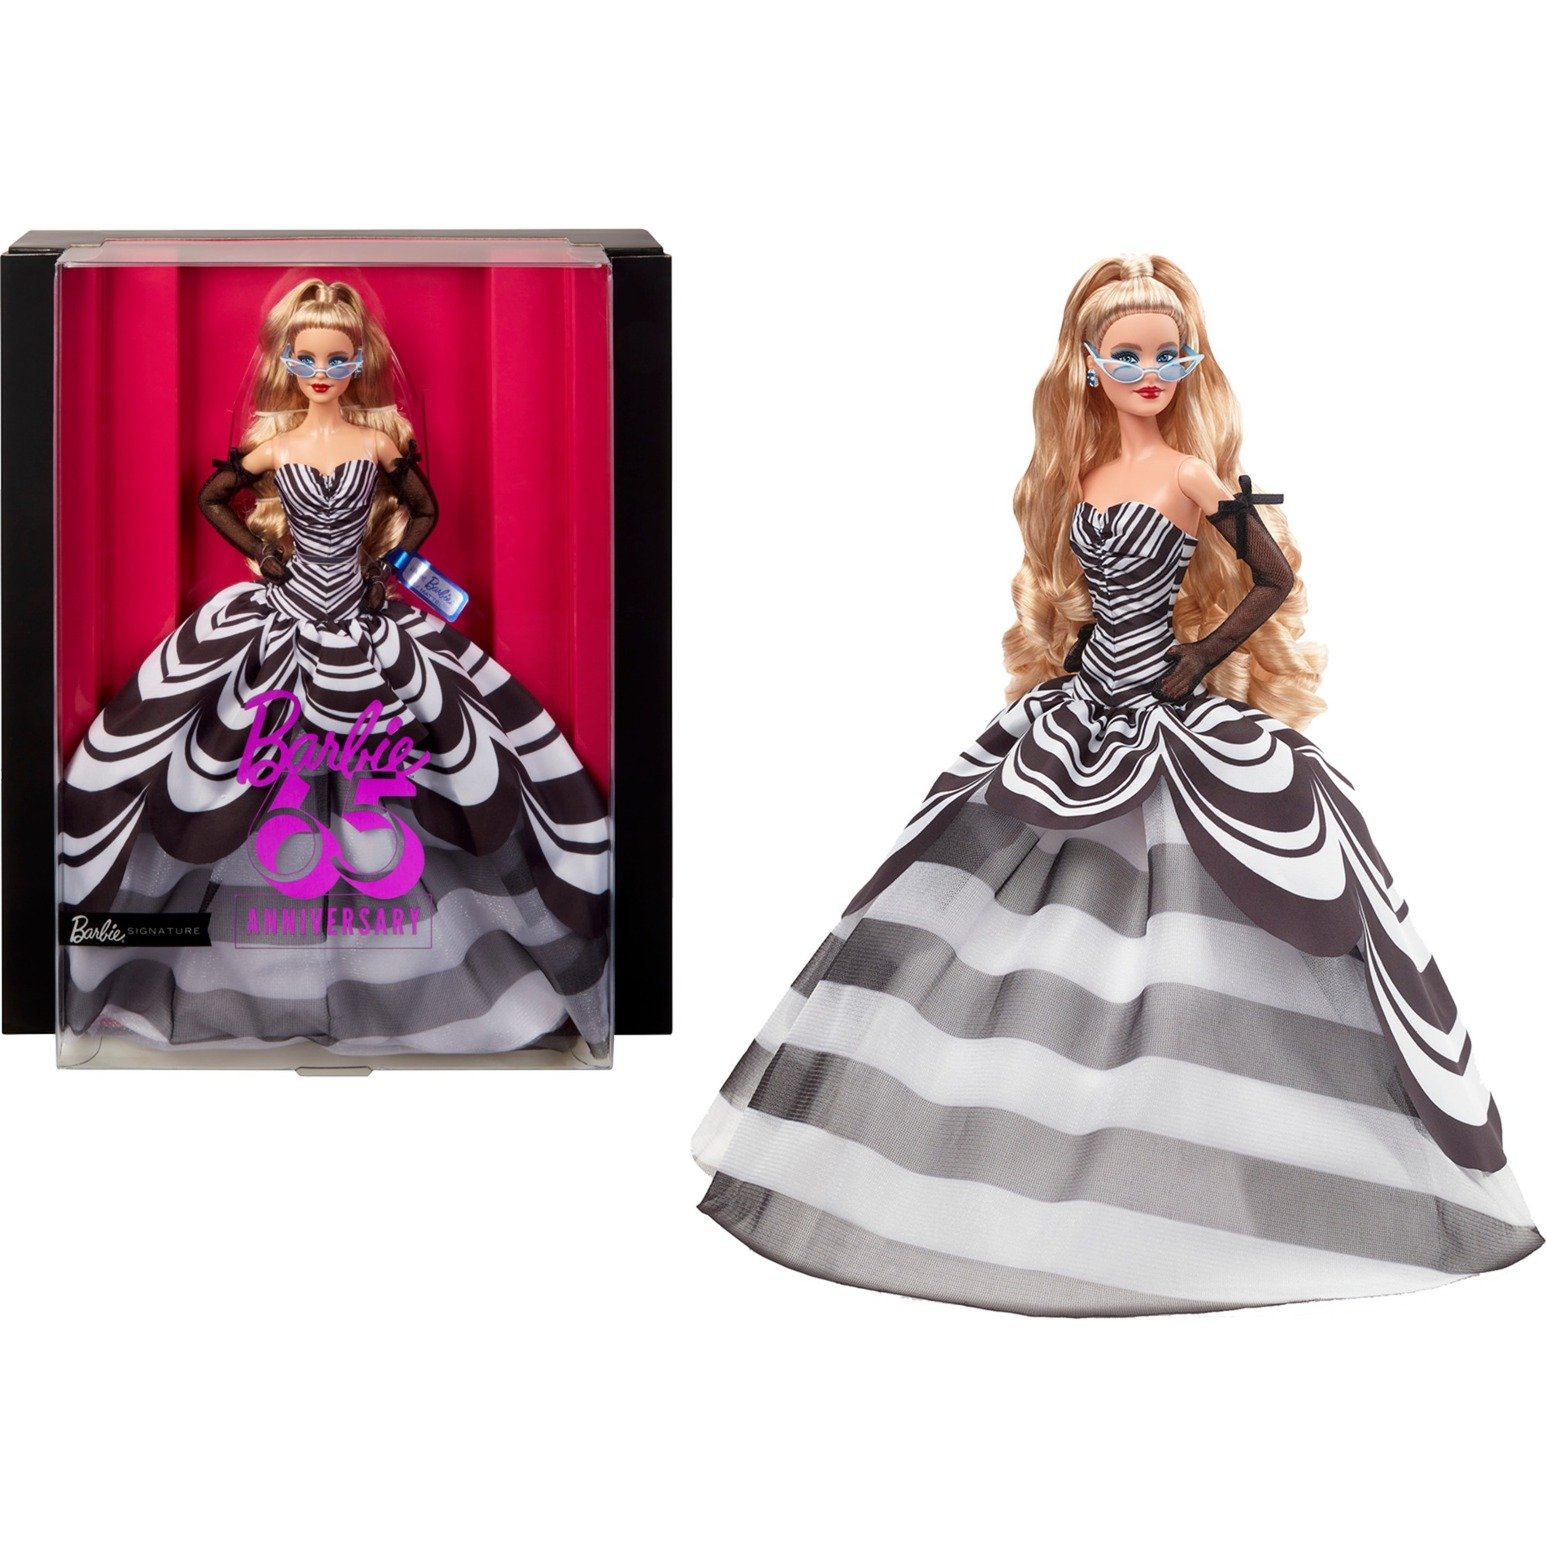 Barbie Signature-Puppe, Sammelfigur zum 65. Jubiläum mit blonden Haaren, schwarz-weißer Robe, Saphirohrringen und Sonnenbrille, HRM58